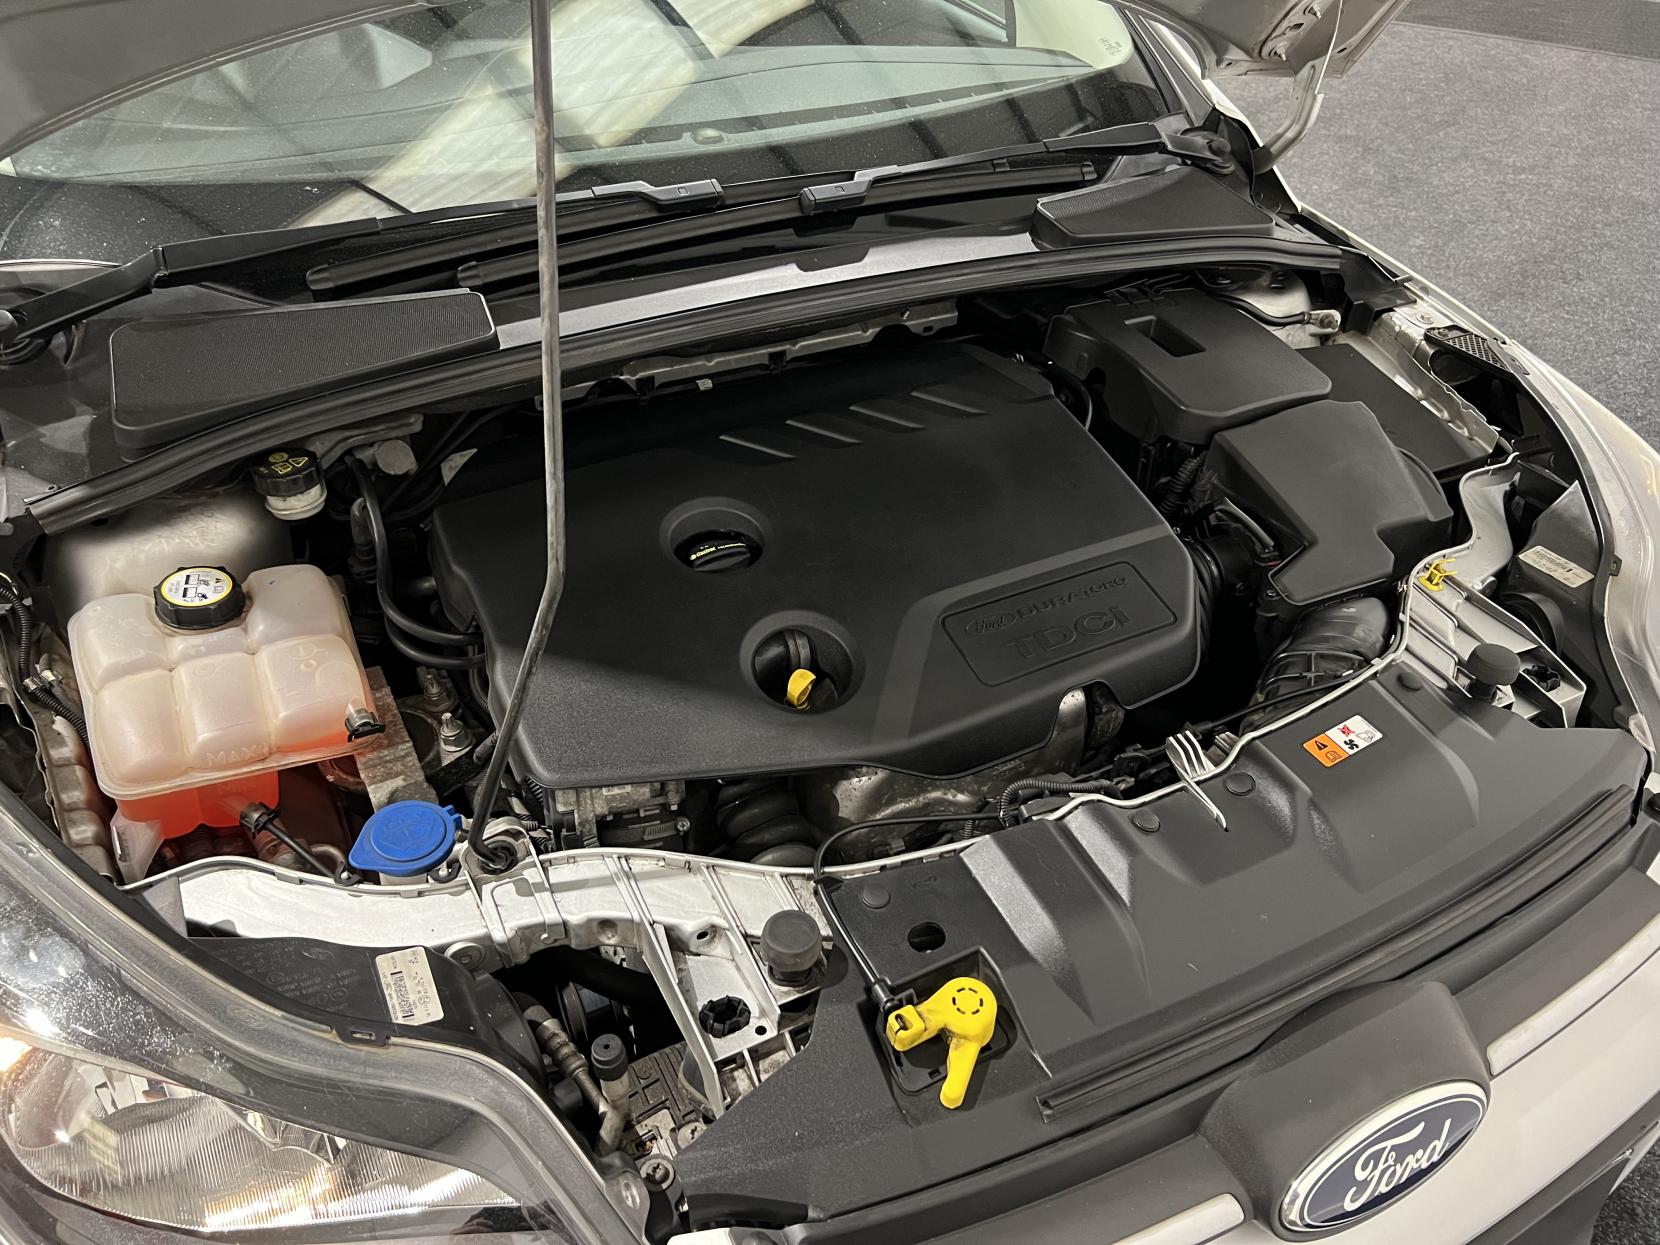 Ford Focus 1.6 TDCi Zetec Hatchback 5dr Diesel Manual Euro 5 (s/s) (115 ps)